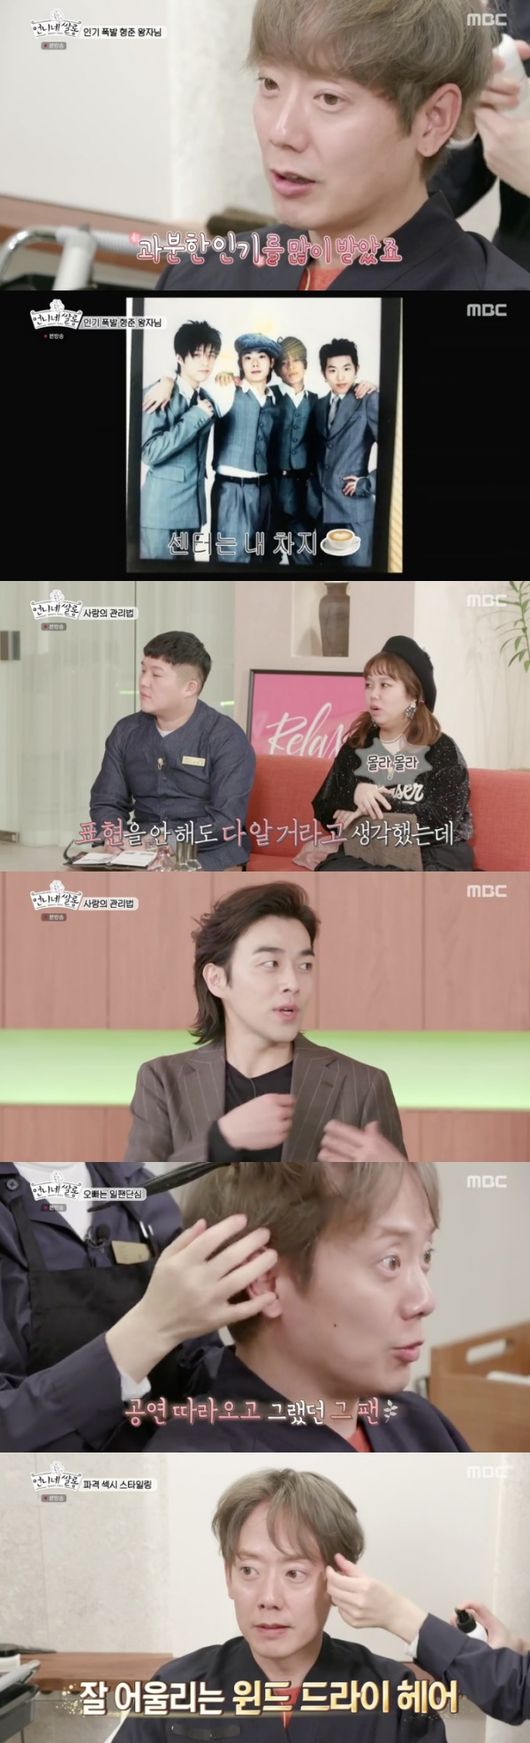 [사진=MBC 방송화면] 태사자 김형준이 '언니네 쌀롱'에 출연했다.